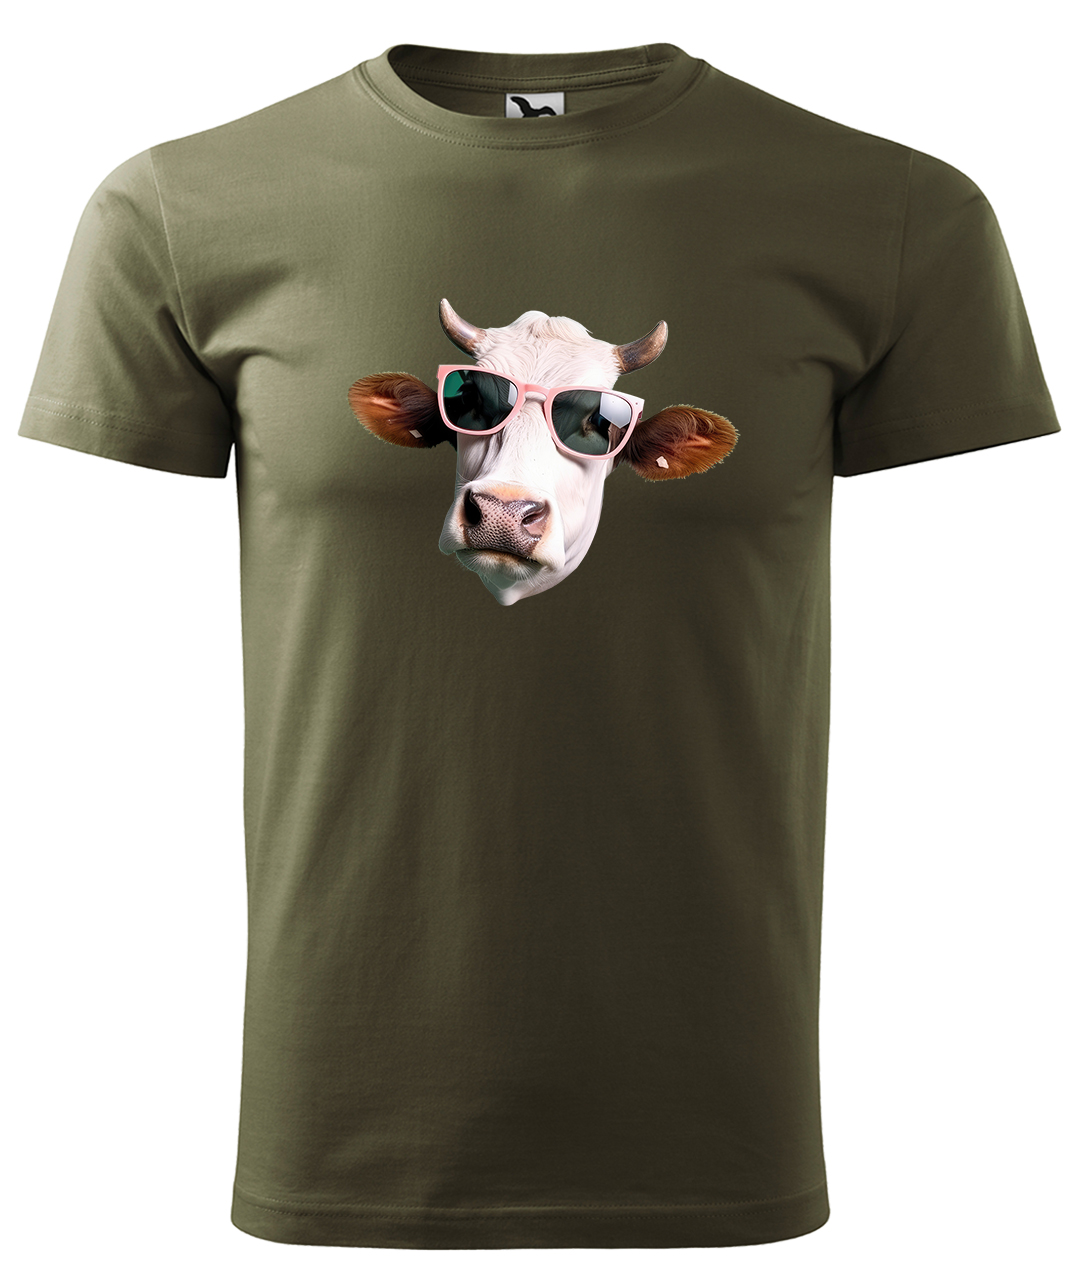 Dětské tričko s krávou - Kráva v brýlích Velikost: 4 roky / 110 cm, Barva: Military (69), Délka rukávu: Krátký rukáv